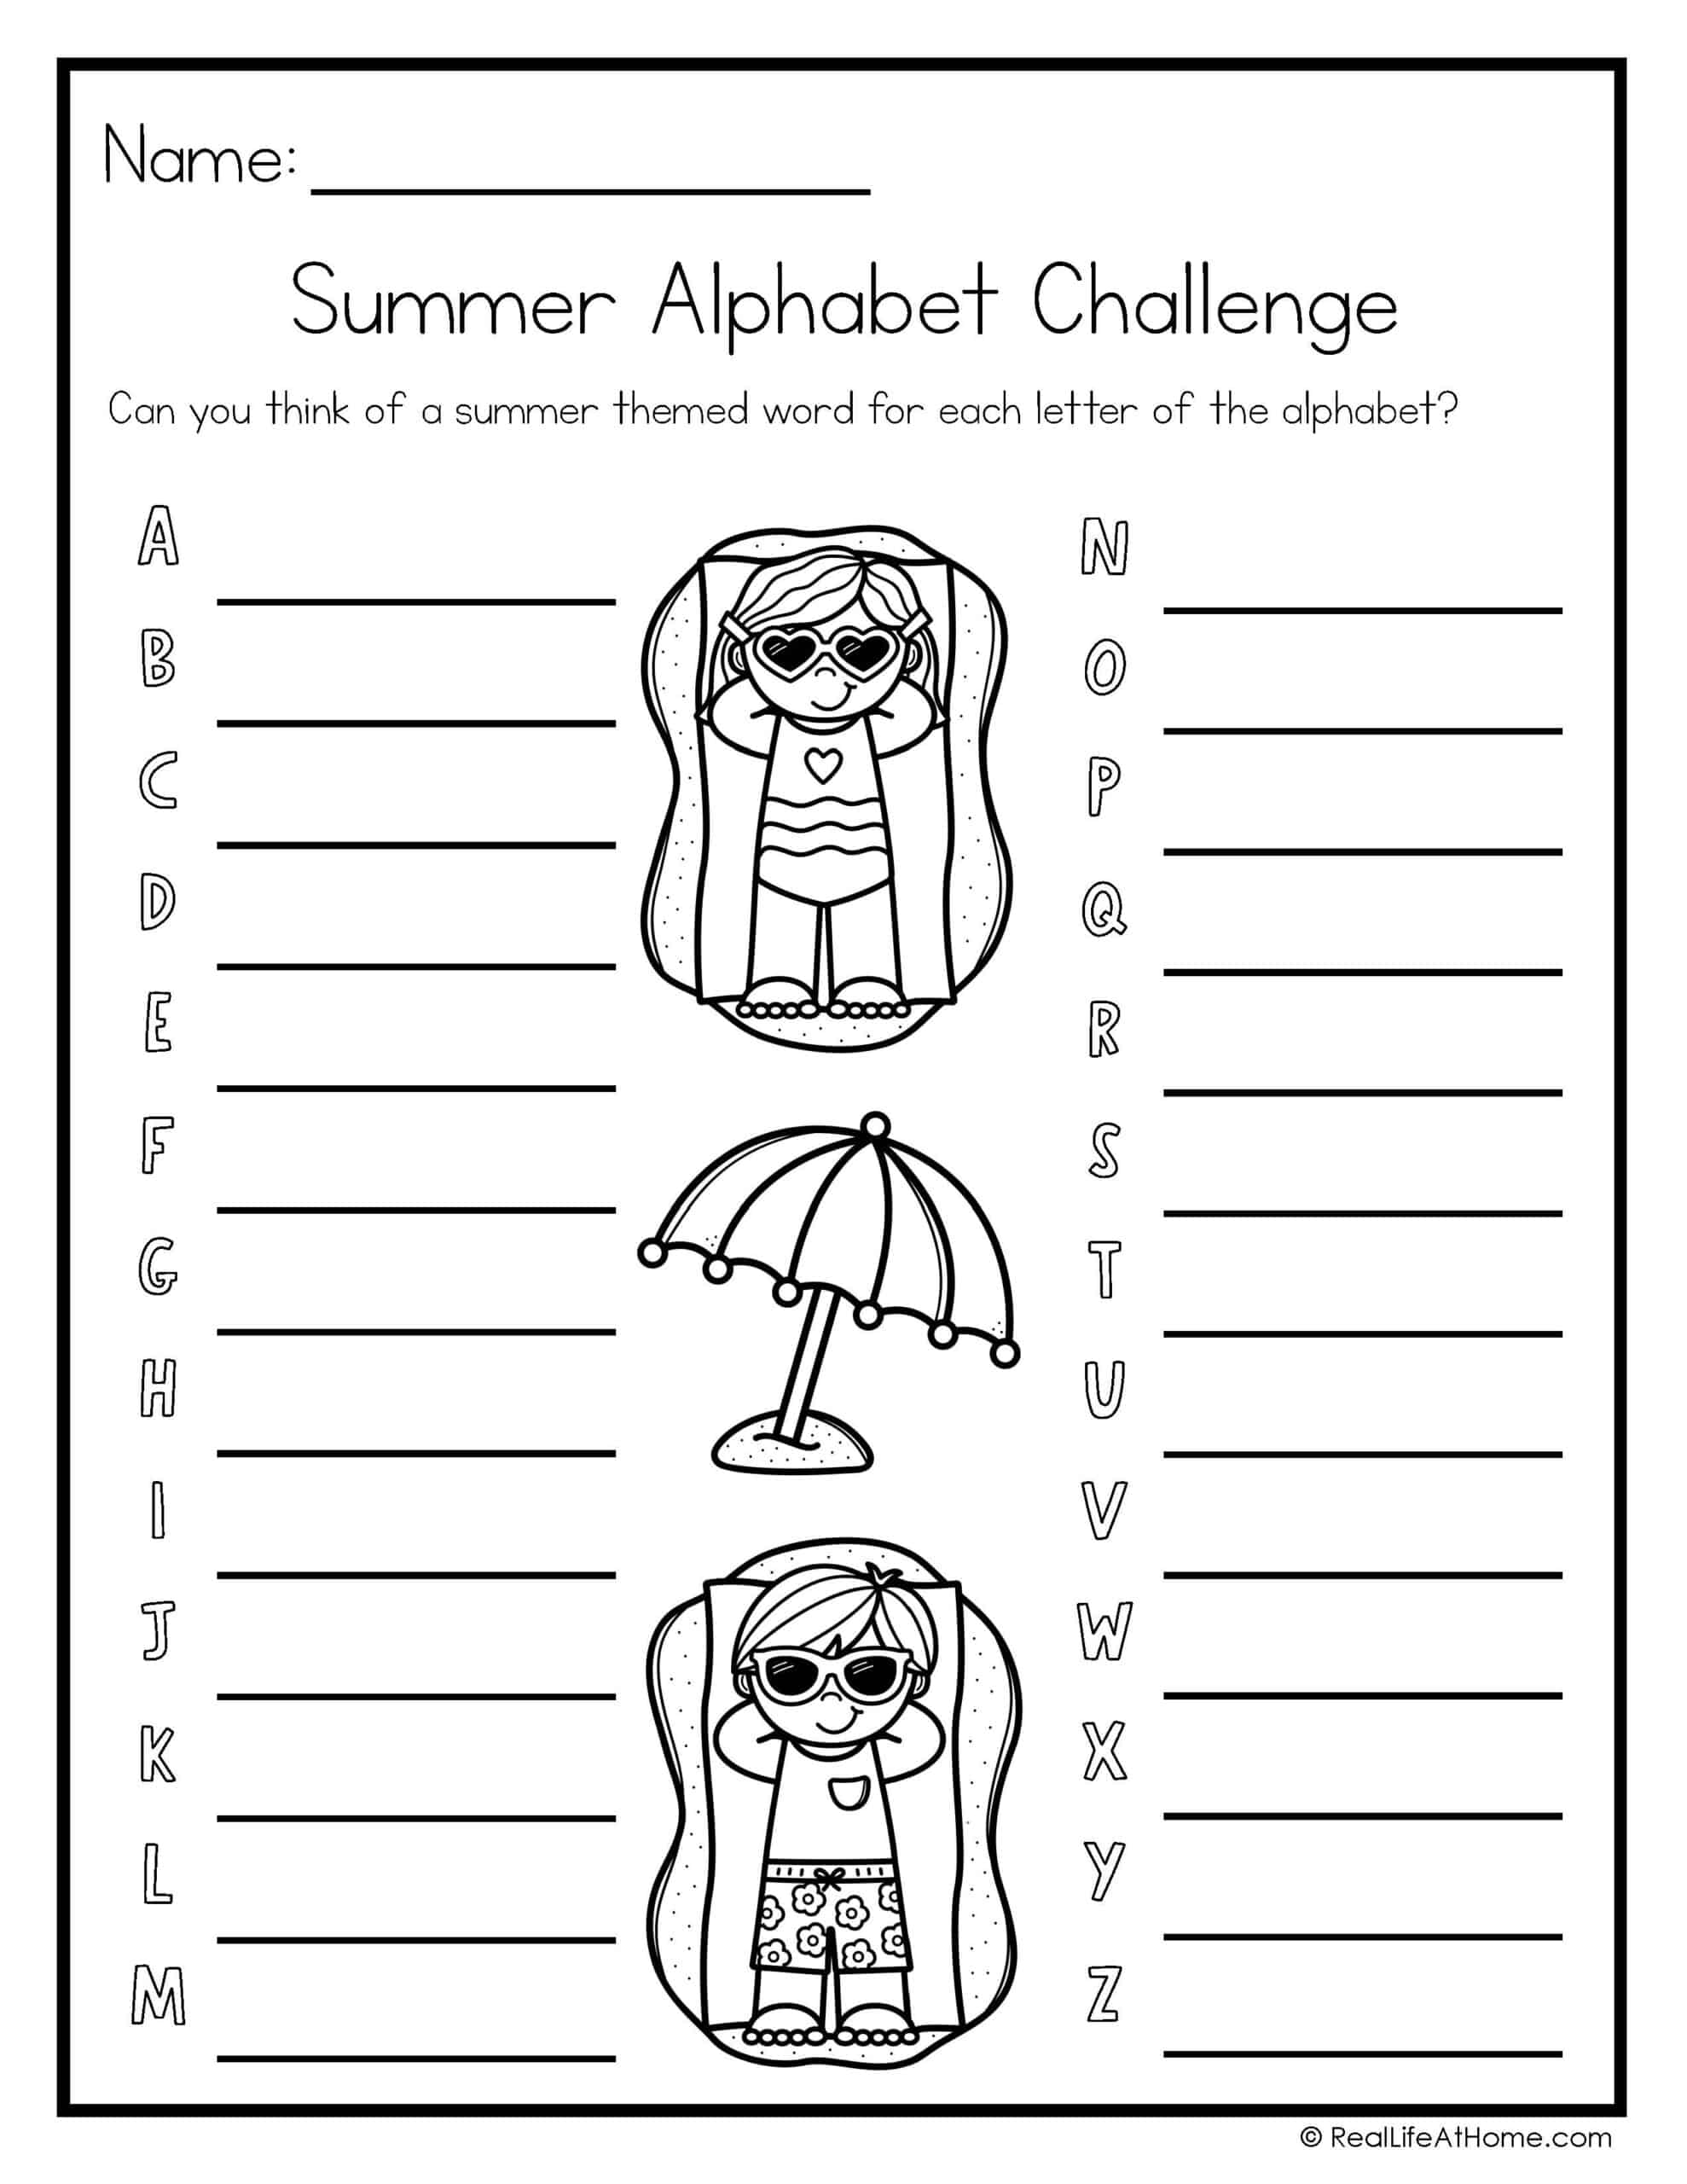 Summer Alphabet Challenge Page